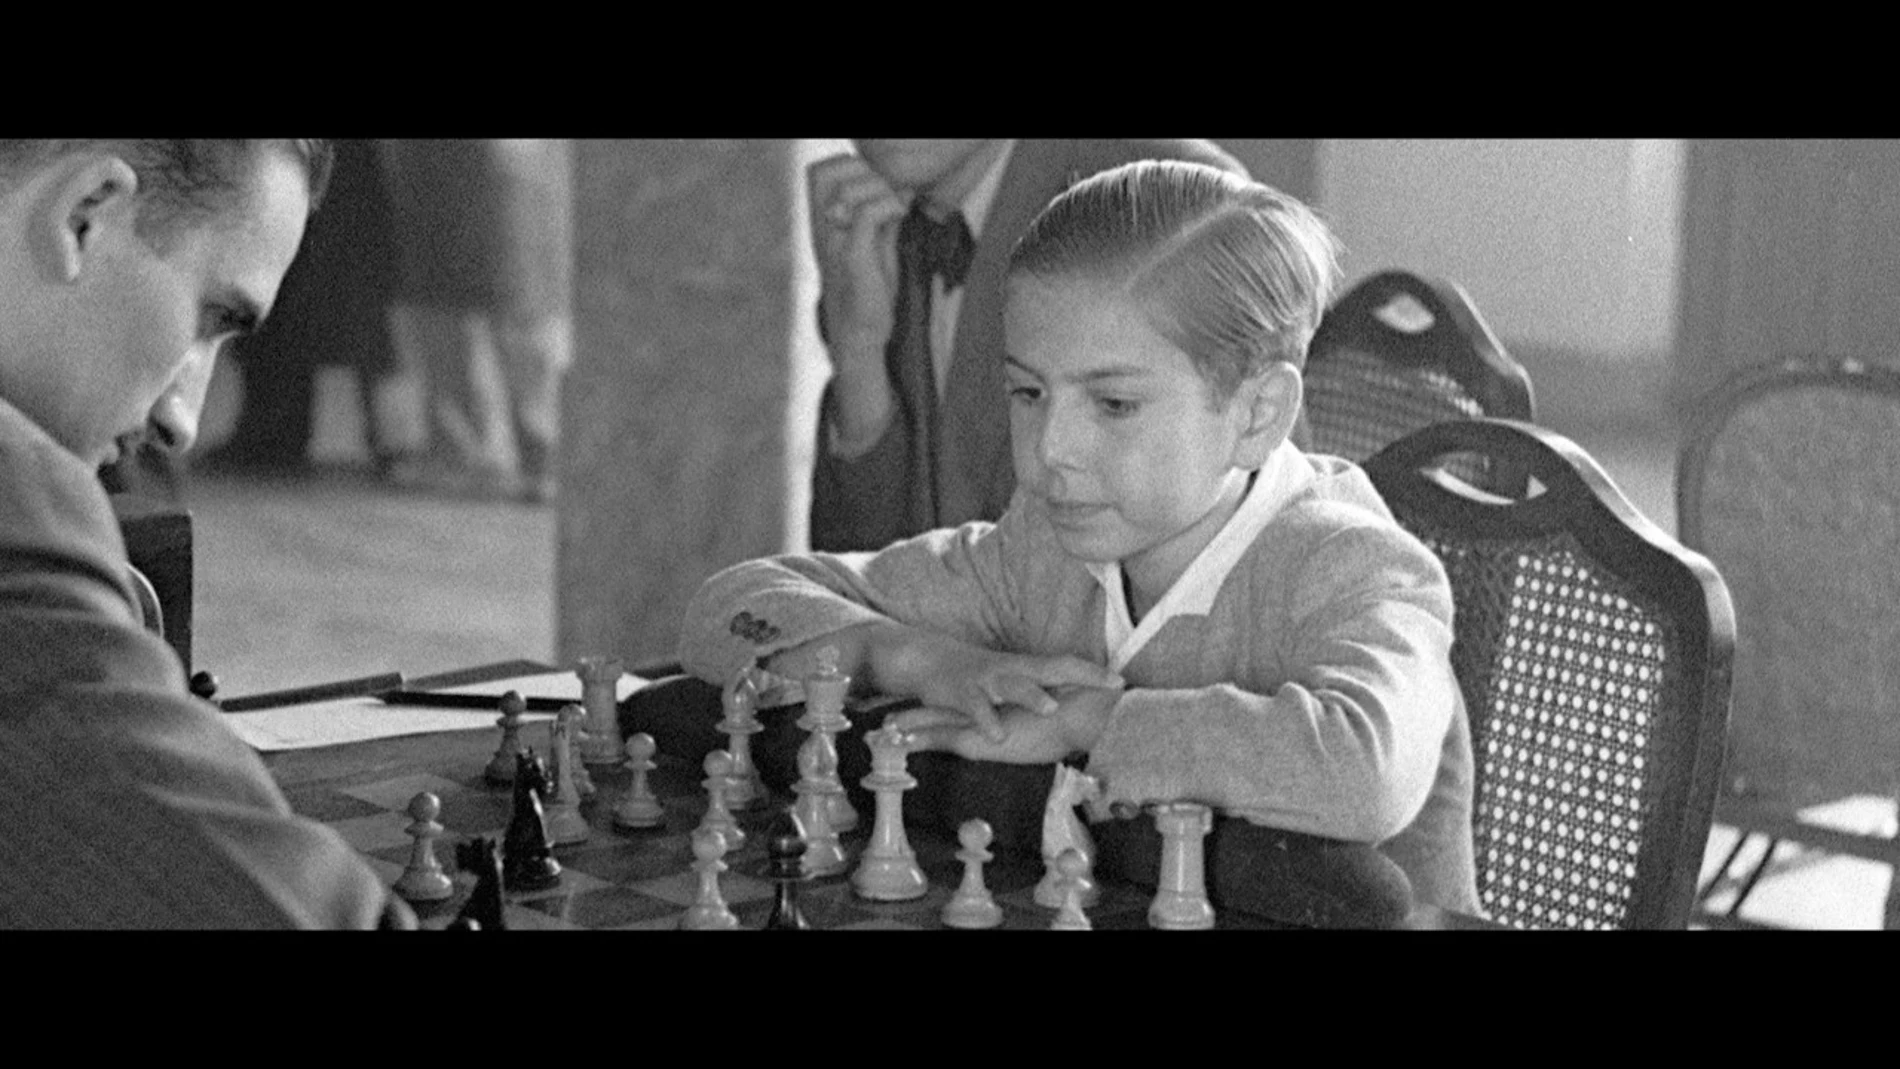 Pomar, durante una partida. Era un genio del ajedrez que pudo haber logrado más éxitos si hubiera contado con el respaldo del régimen